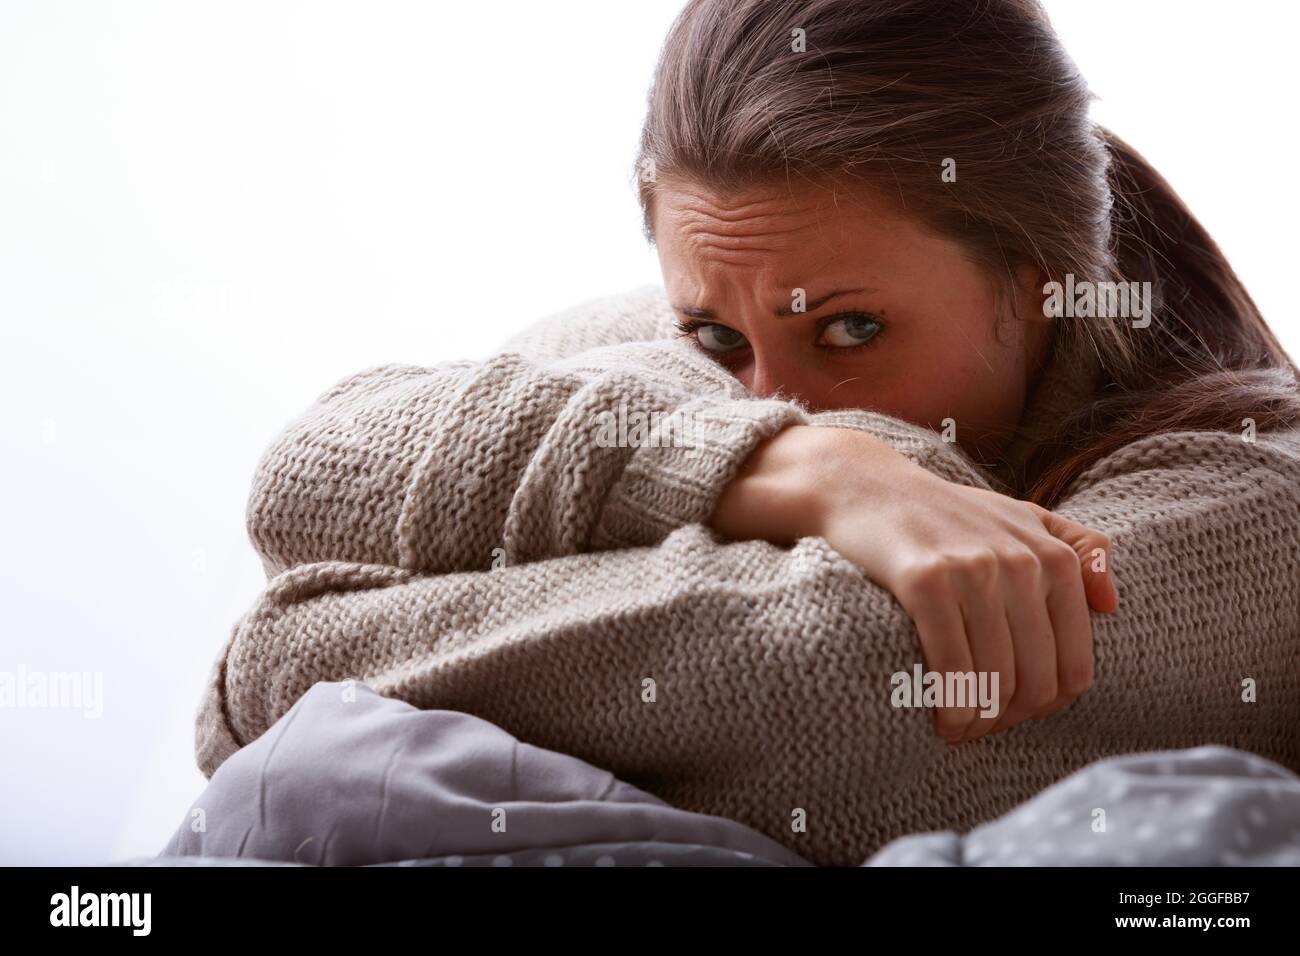 Une jeune femme troublée ou malade cache son visage dans son bras en regardant l'appareil photo avec des yeux larges et une fronde dans un portrait de gros plan court Banque D'Images